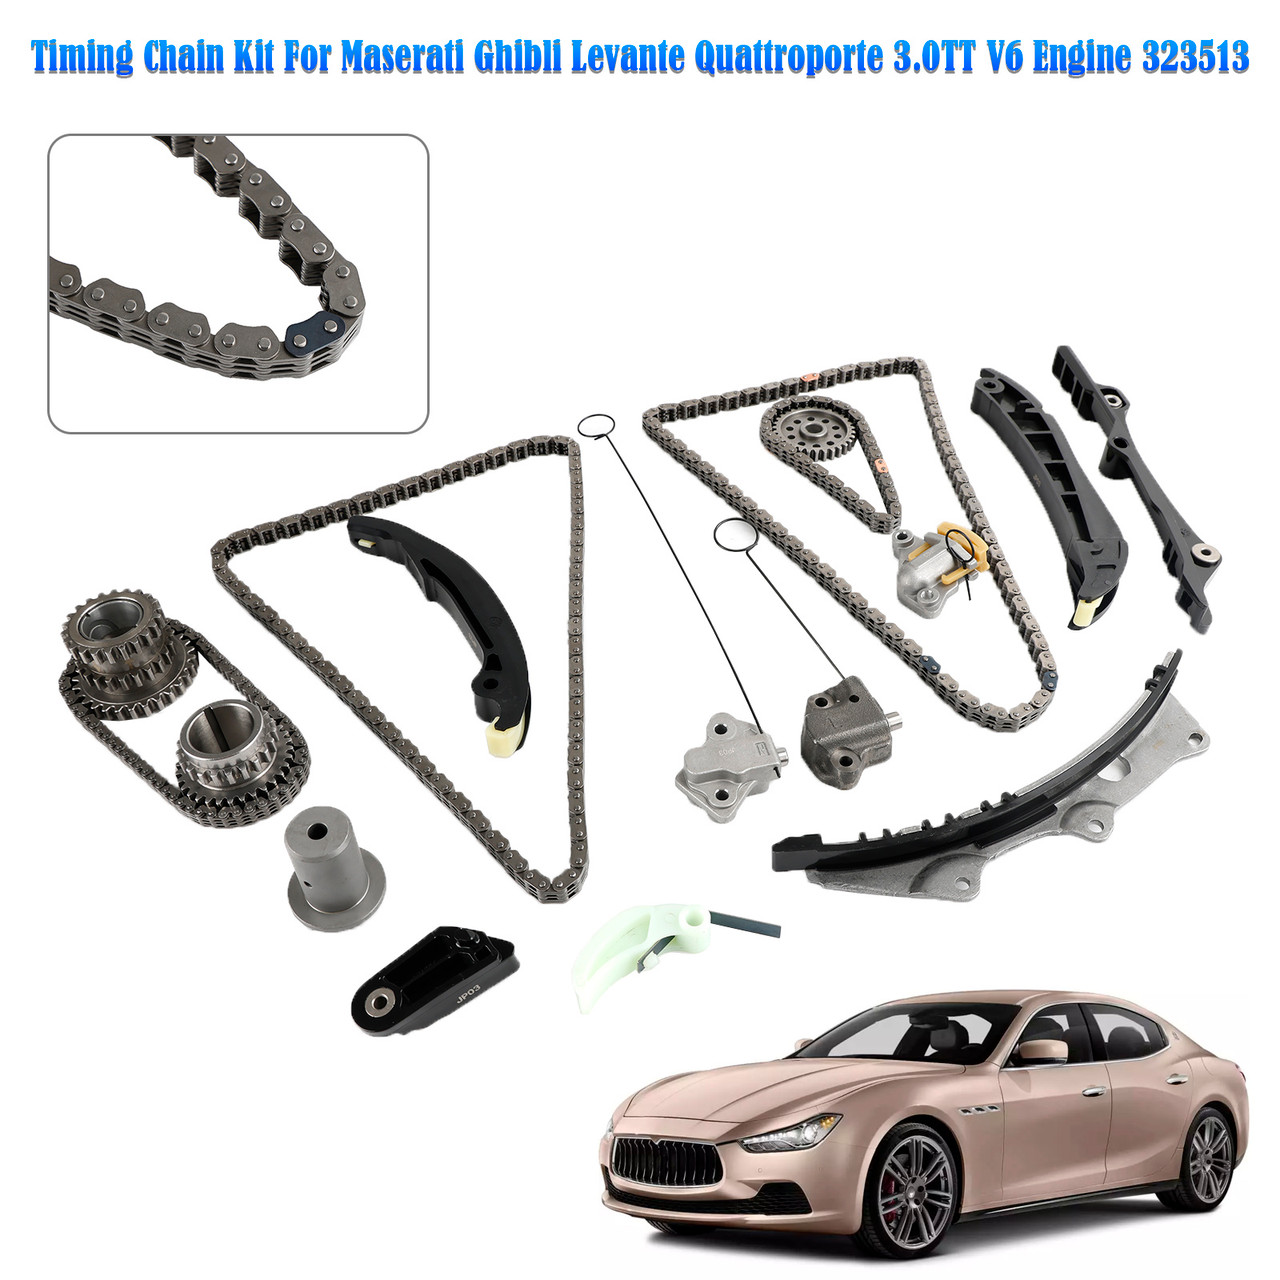 Timing Chain Kit For Maserati Ghibli Levante Quattroporte 3.0TT V6 Engine 323513